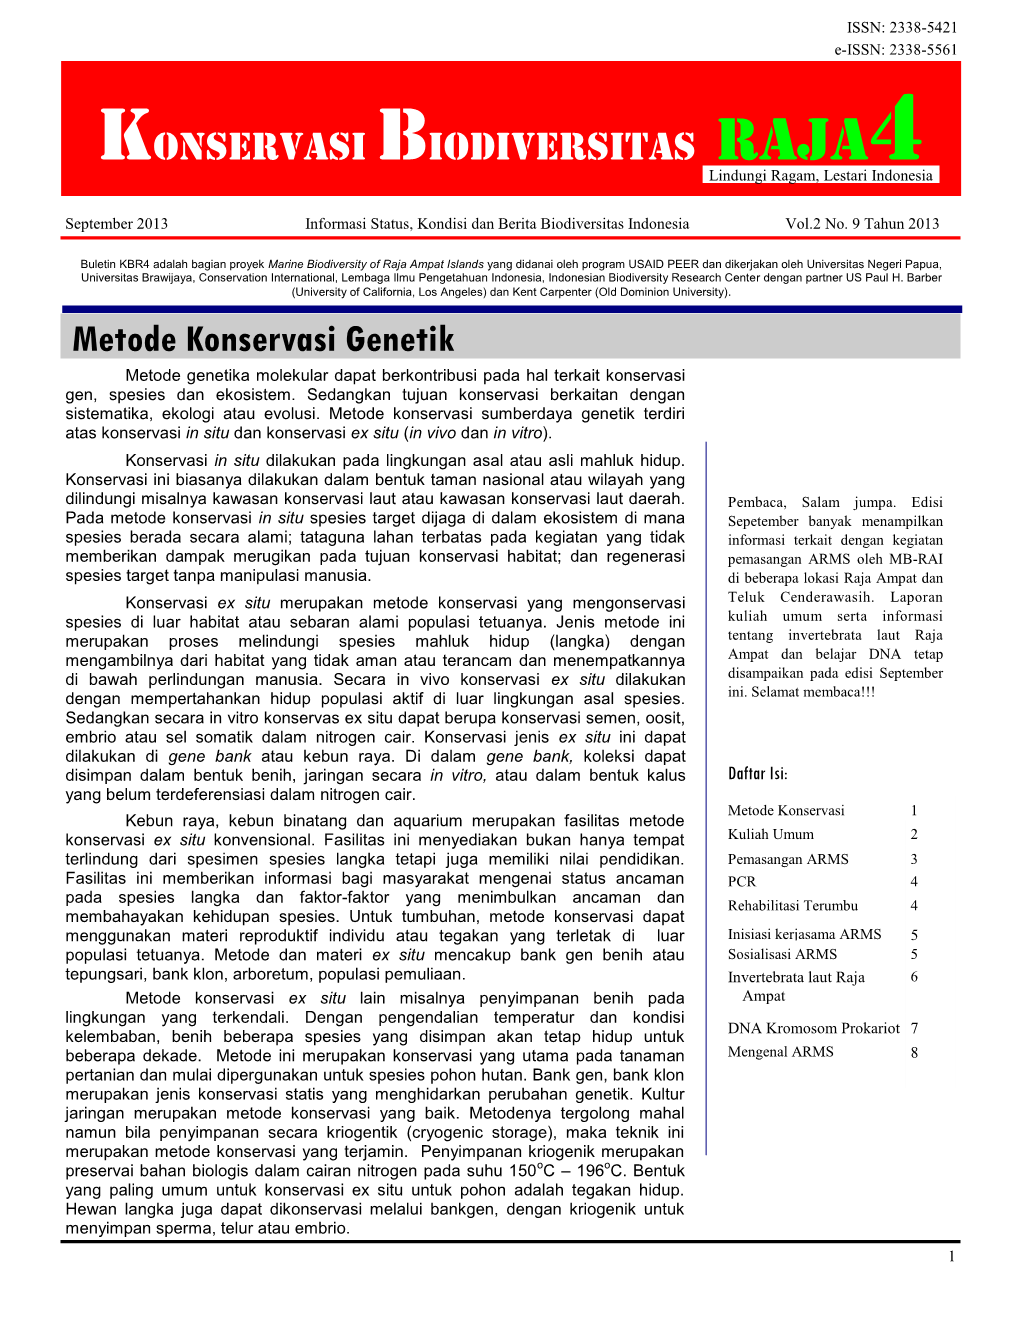 September 2013 Informasi Status, Kondisi Dan Berita Biodiversitas Indonesia Vol.2 No